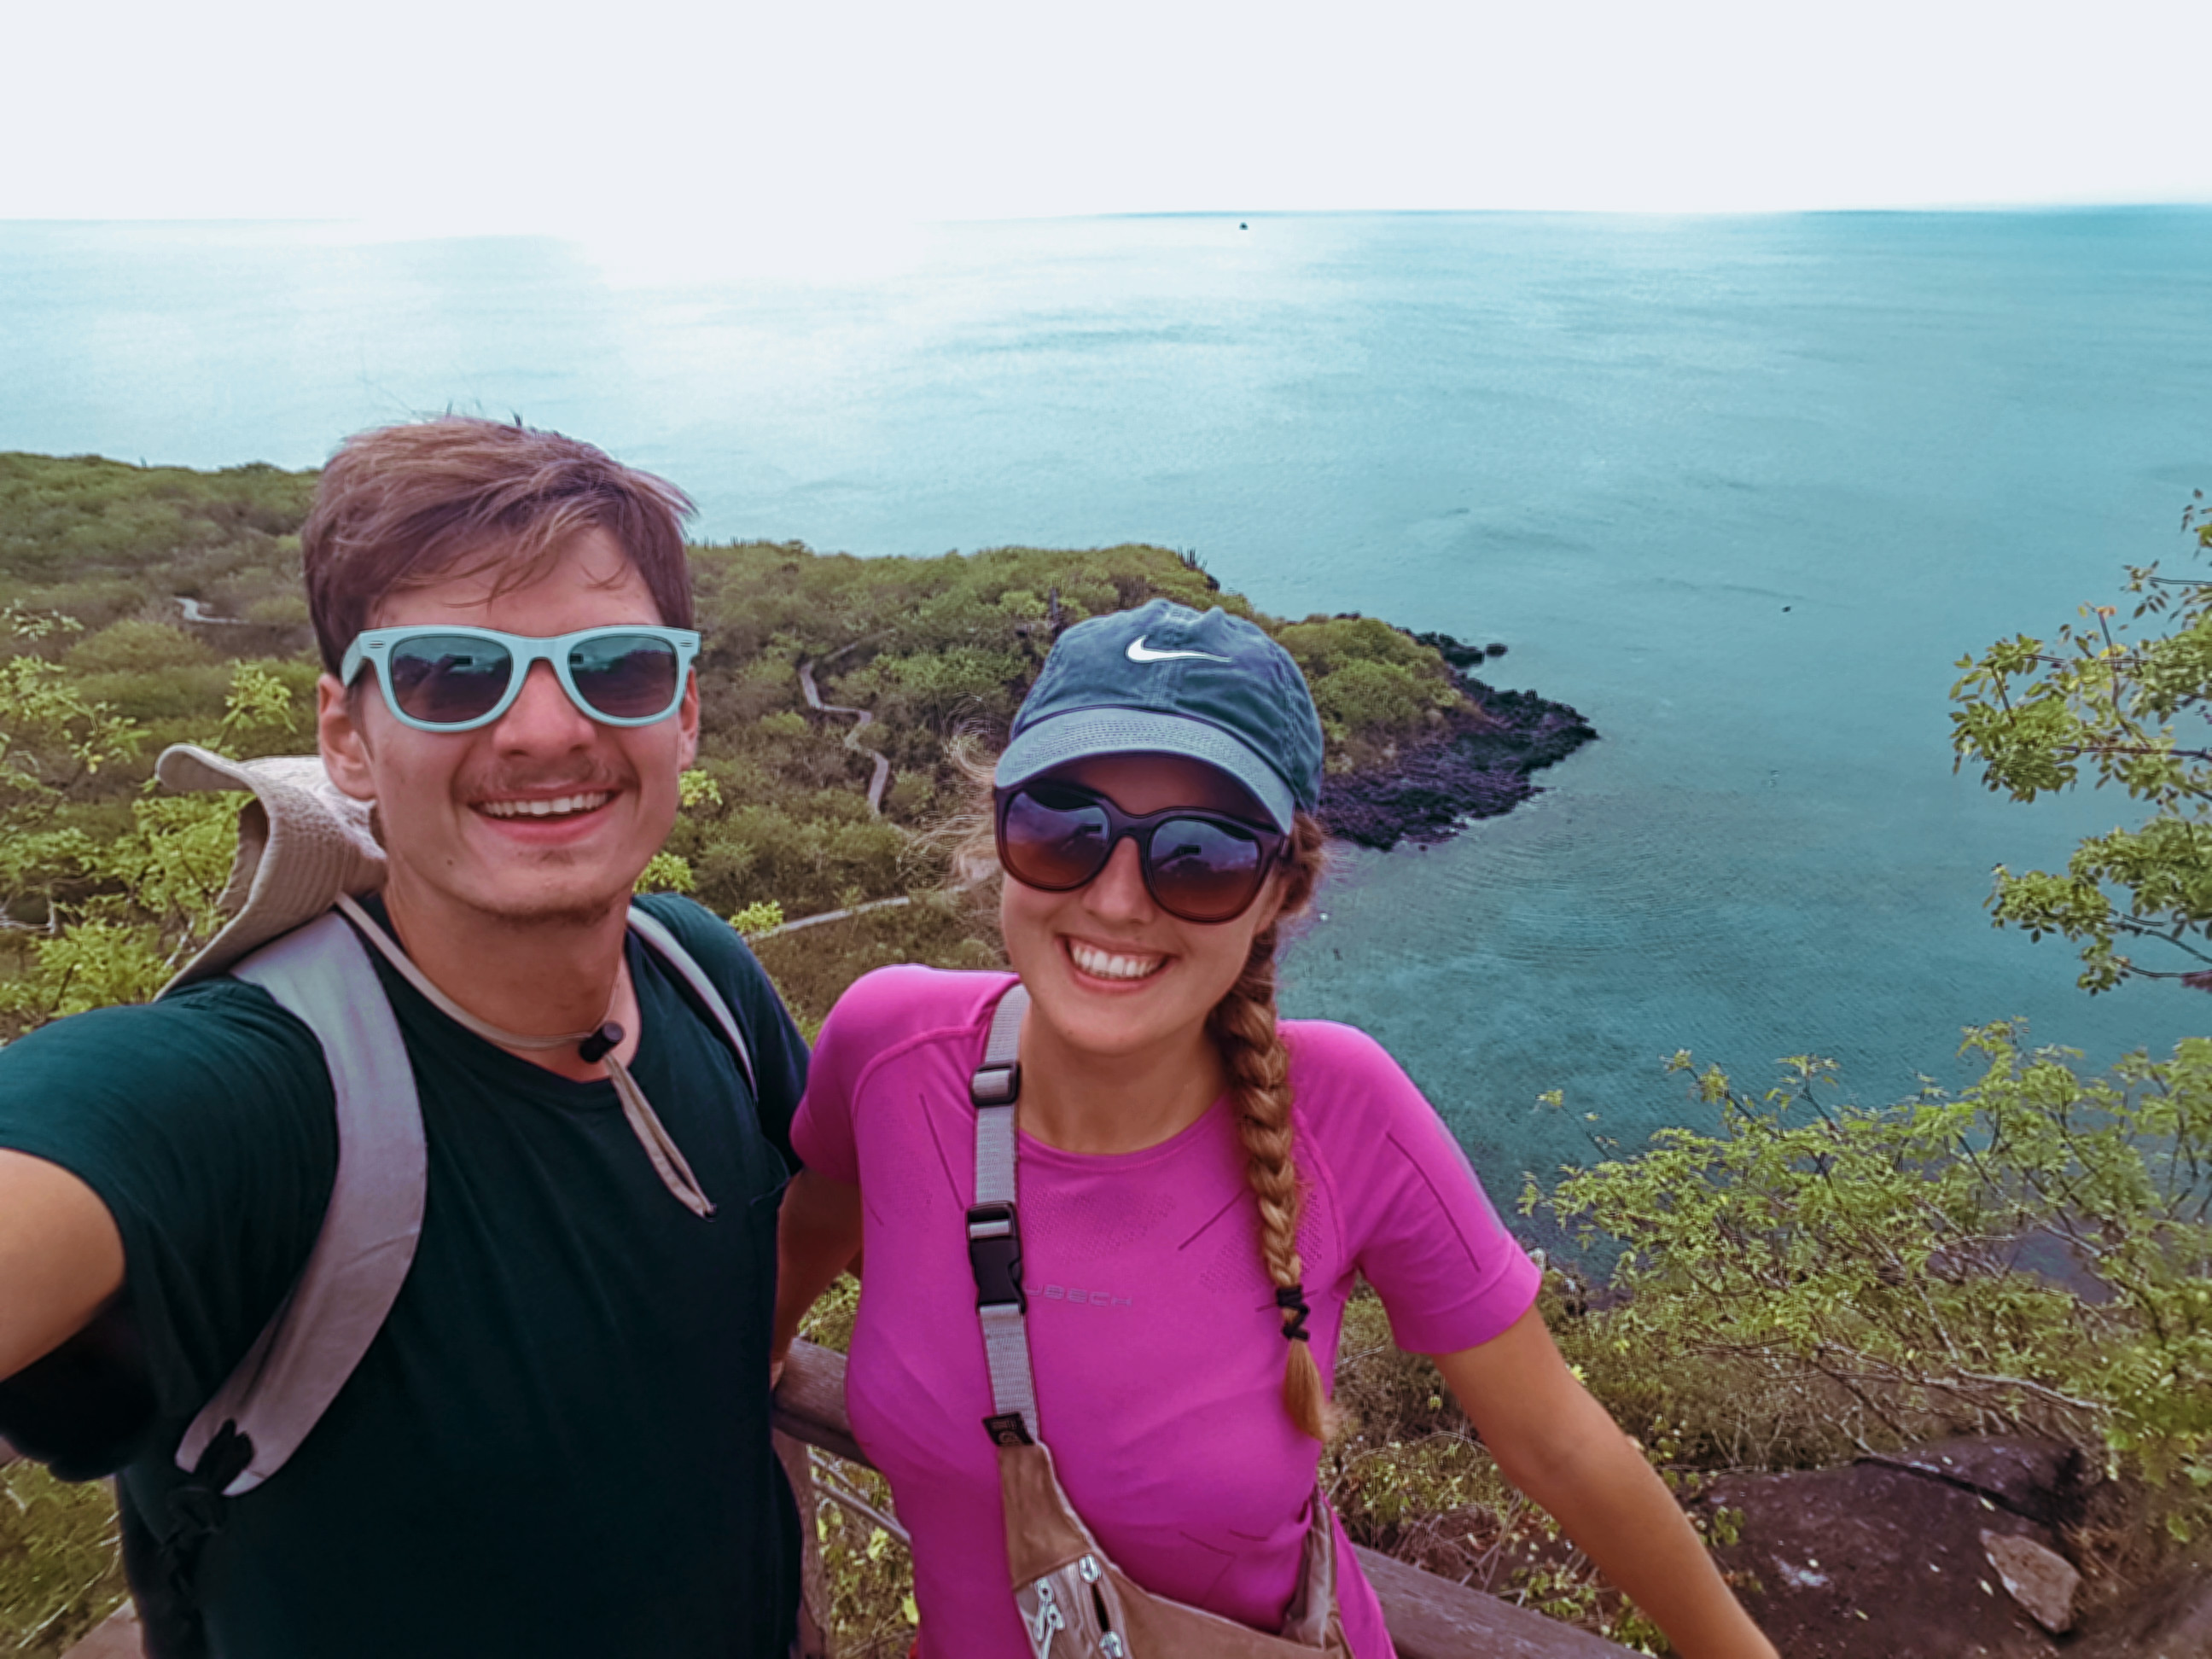 Jak tanio zwiedzić Wyspy Galapagos Darmowe atrakcje na wyspach (17)